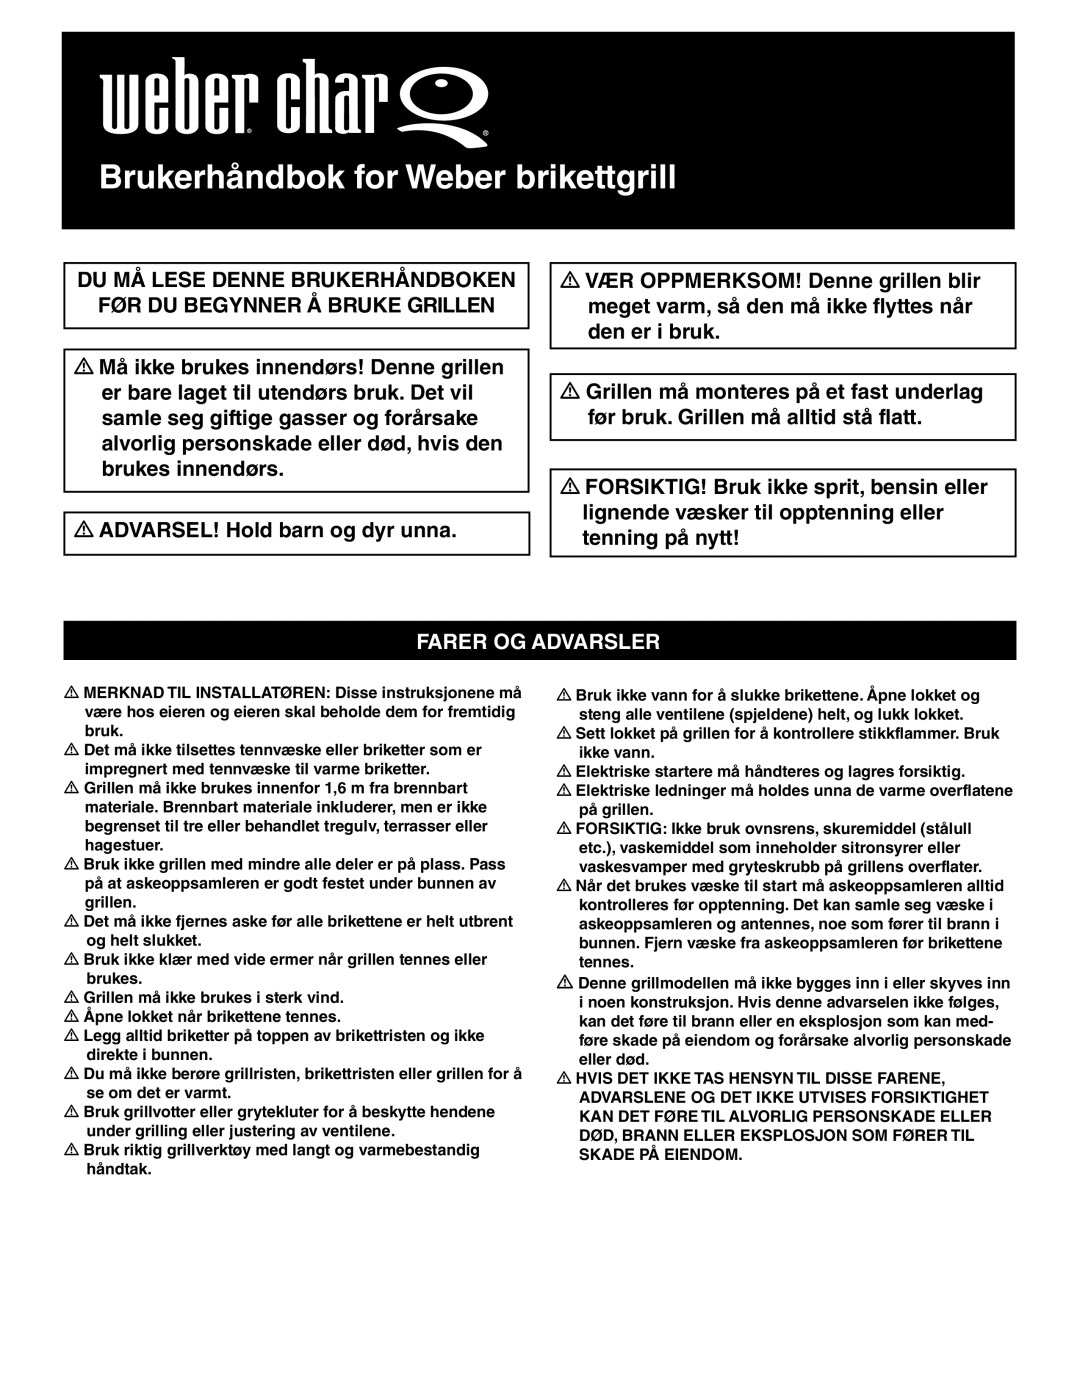 Weber Weber Charcoal Grill, 41093 manual Brukerhåndbok for Weber brikettgrill, Farer Og Advarsler 